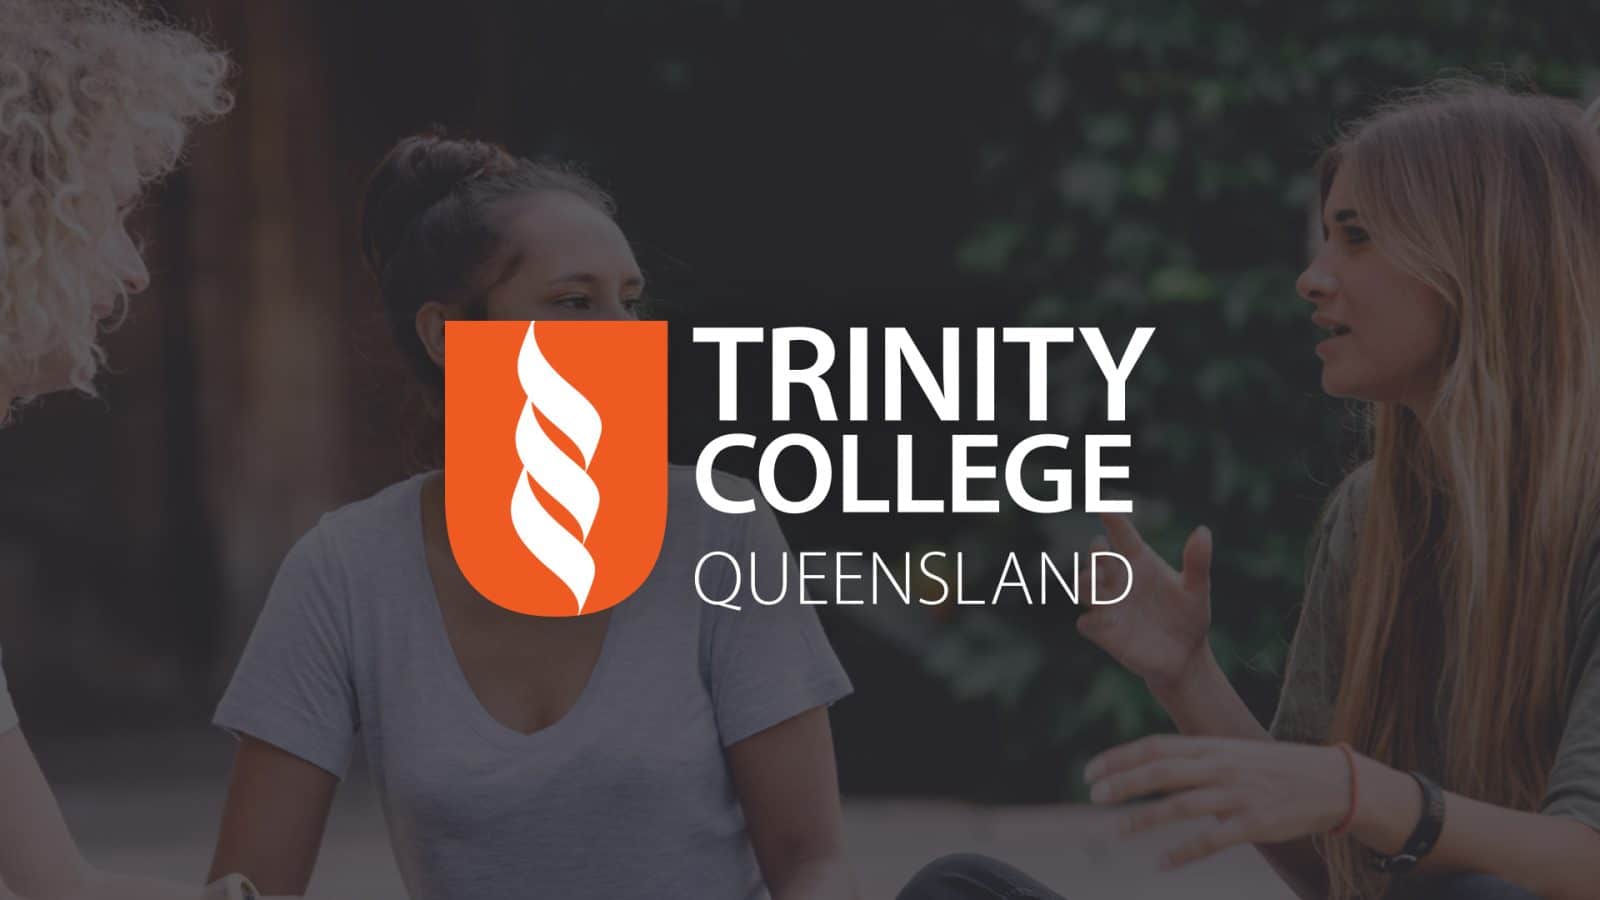 School Education Website Design development - Trinity College Queensland